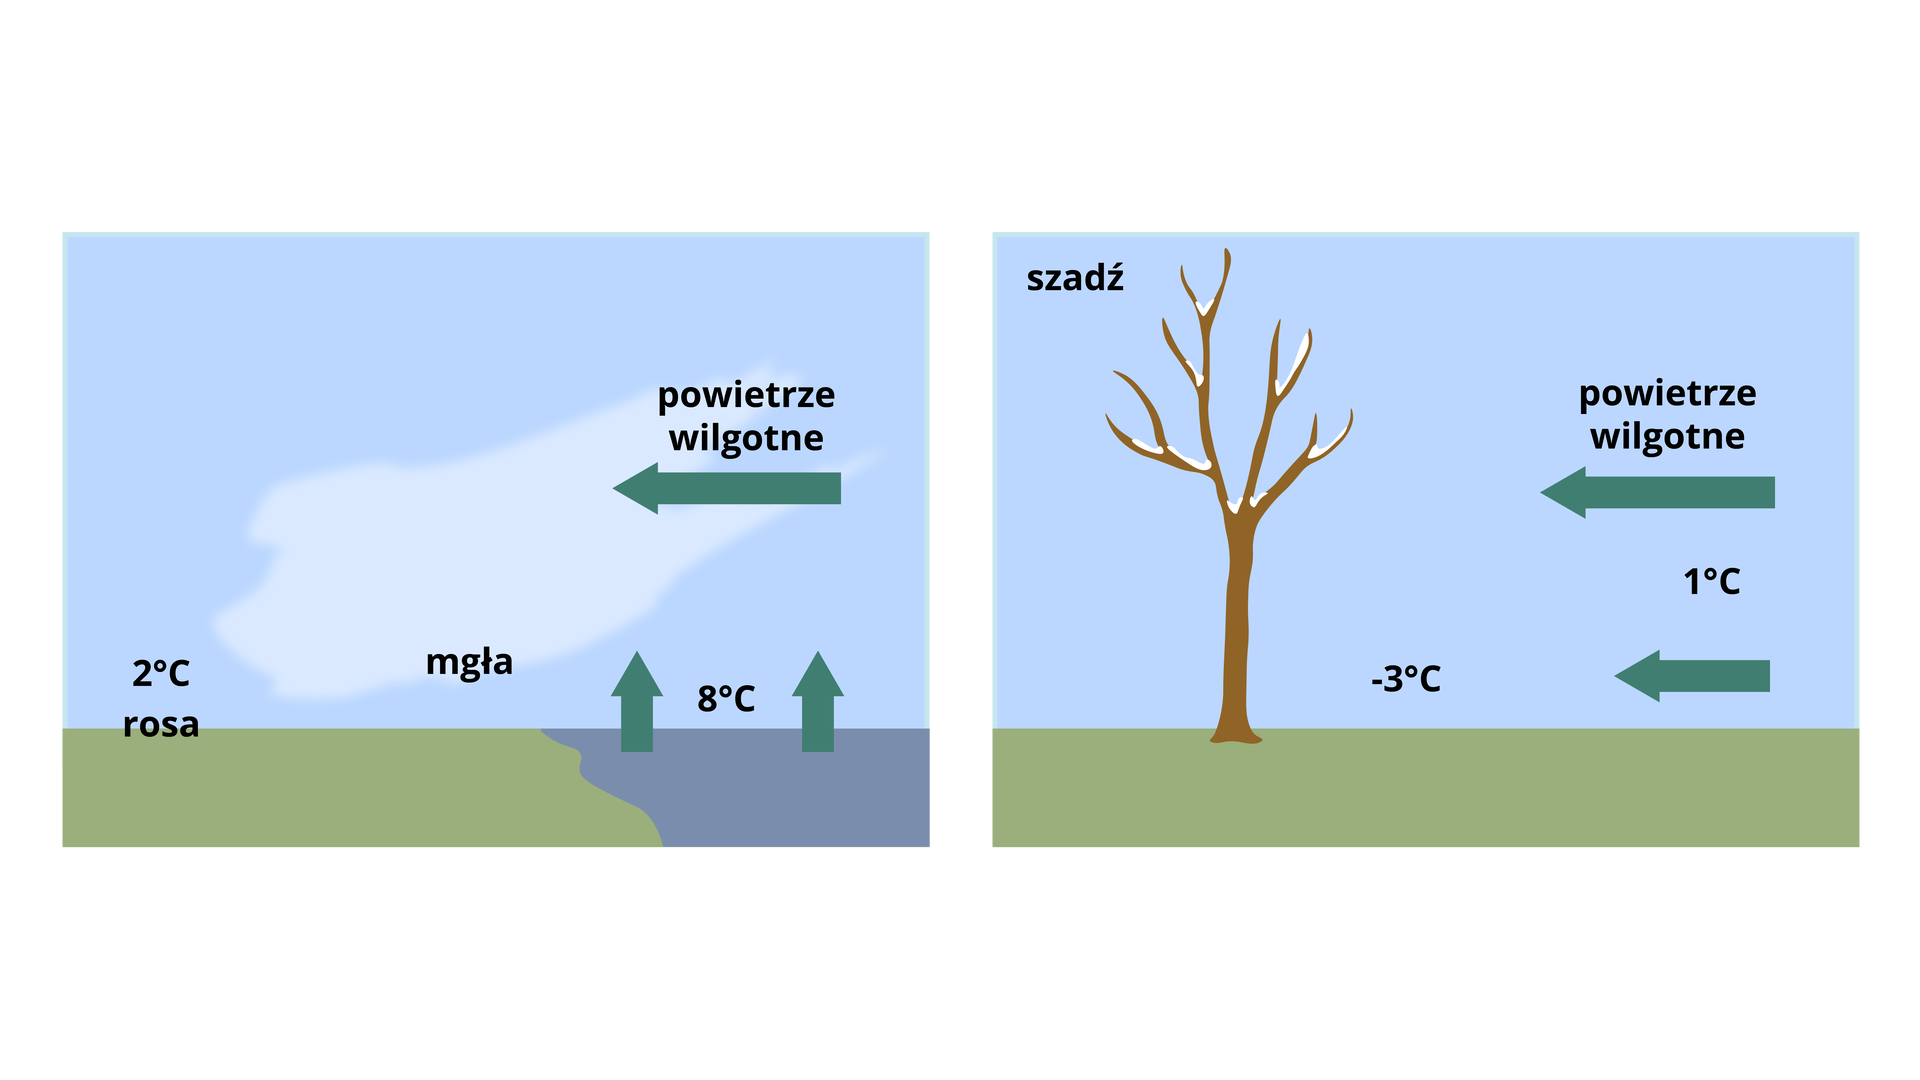 Pierwsza grafika przedstawia rosę. Z lewej strony znajduje się rosa 2 stopnie Celsjusza, dalej mgła, dalej zbiornik wodny 8 stopni Celsjusza. Wilgotne powietrze napływa z prawej strony. Druga grafika przedstawia szadź. Z lewej strony znajduje się drzewo, panuje temperatura minus 3 stopnie Celsjusza. Z prawej strony nadciąga wilgotne powietrze oraz temperatura 1 stopień Celsjusza.